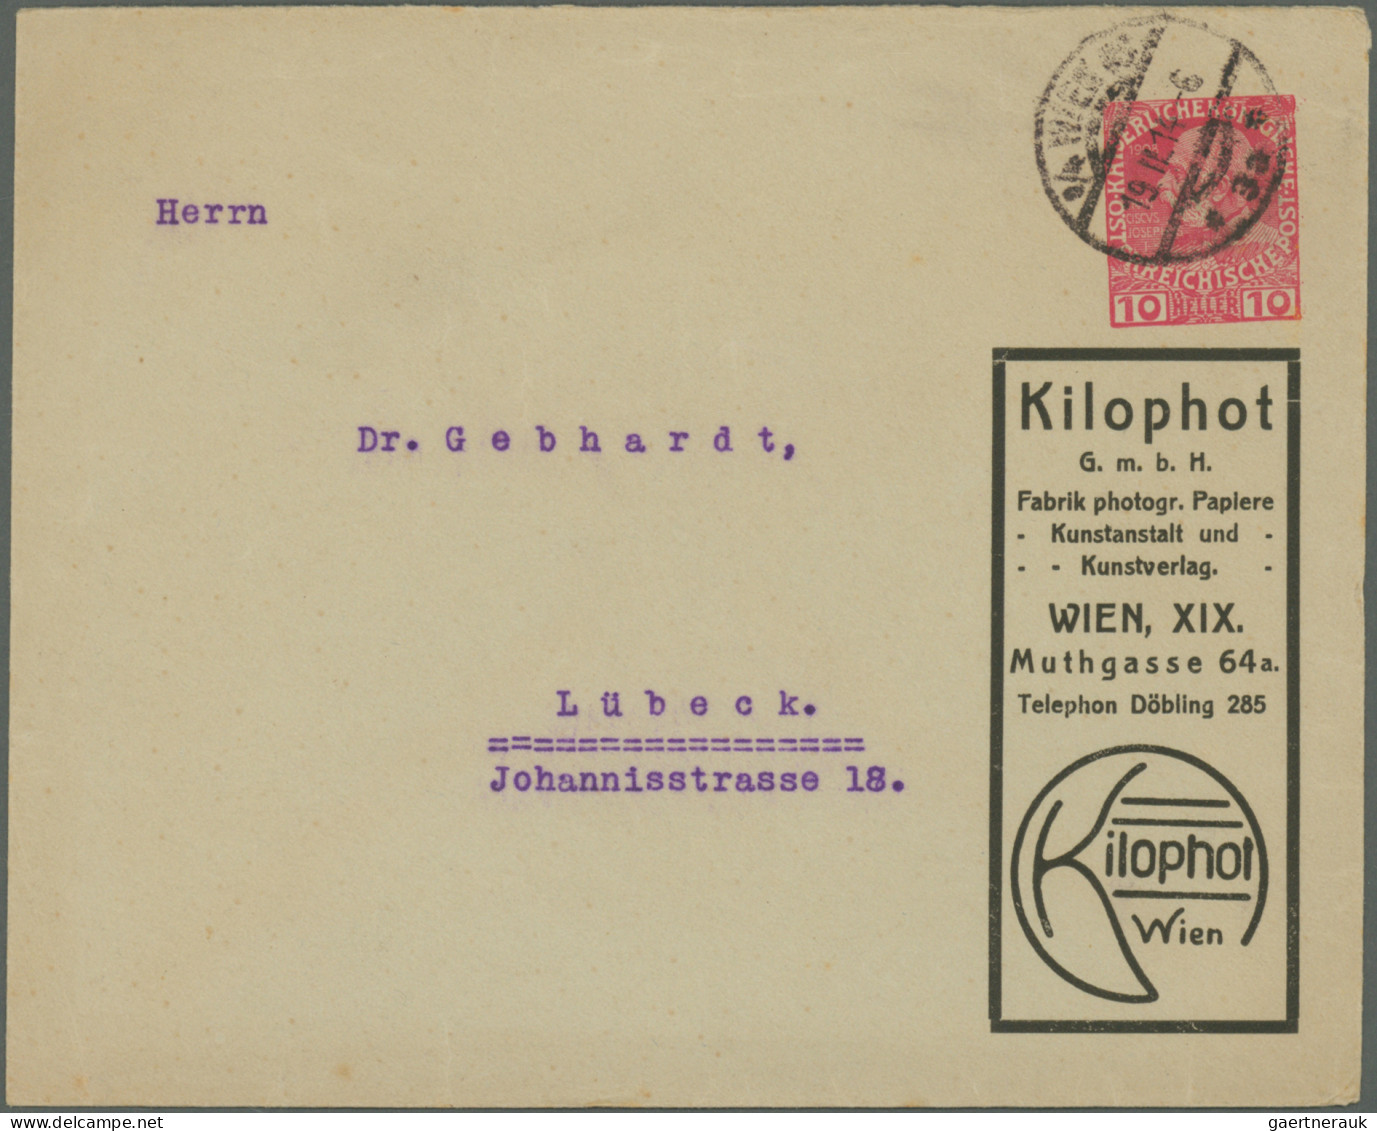 Österreich: 1880/1990 (ca.), vielseitige Partie von ca. 330 Briefen und Karten,